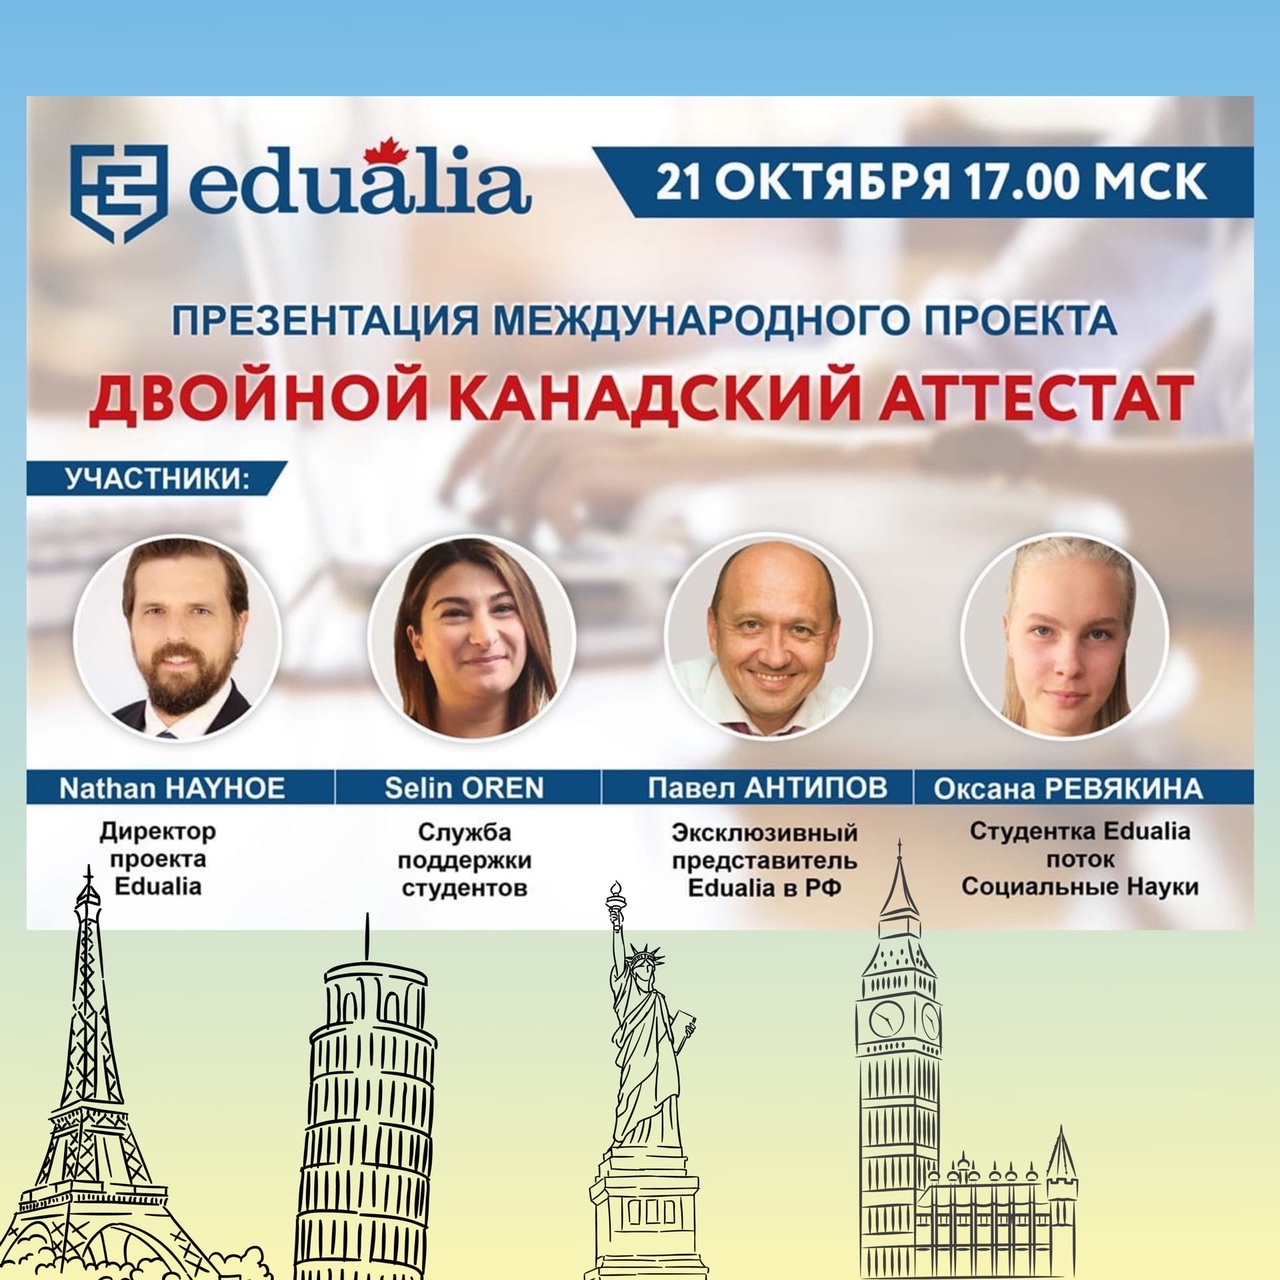 Друзья, мы рады пригласить Вас на большую онлайн презентацию международного образовательного проекта Edualia — ДВОЙНОЙ КАНАДСКИЙ АТТЕСТАТ🔥 🗓 21 октября в 17.00 МСК.